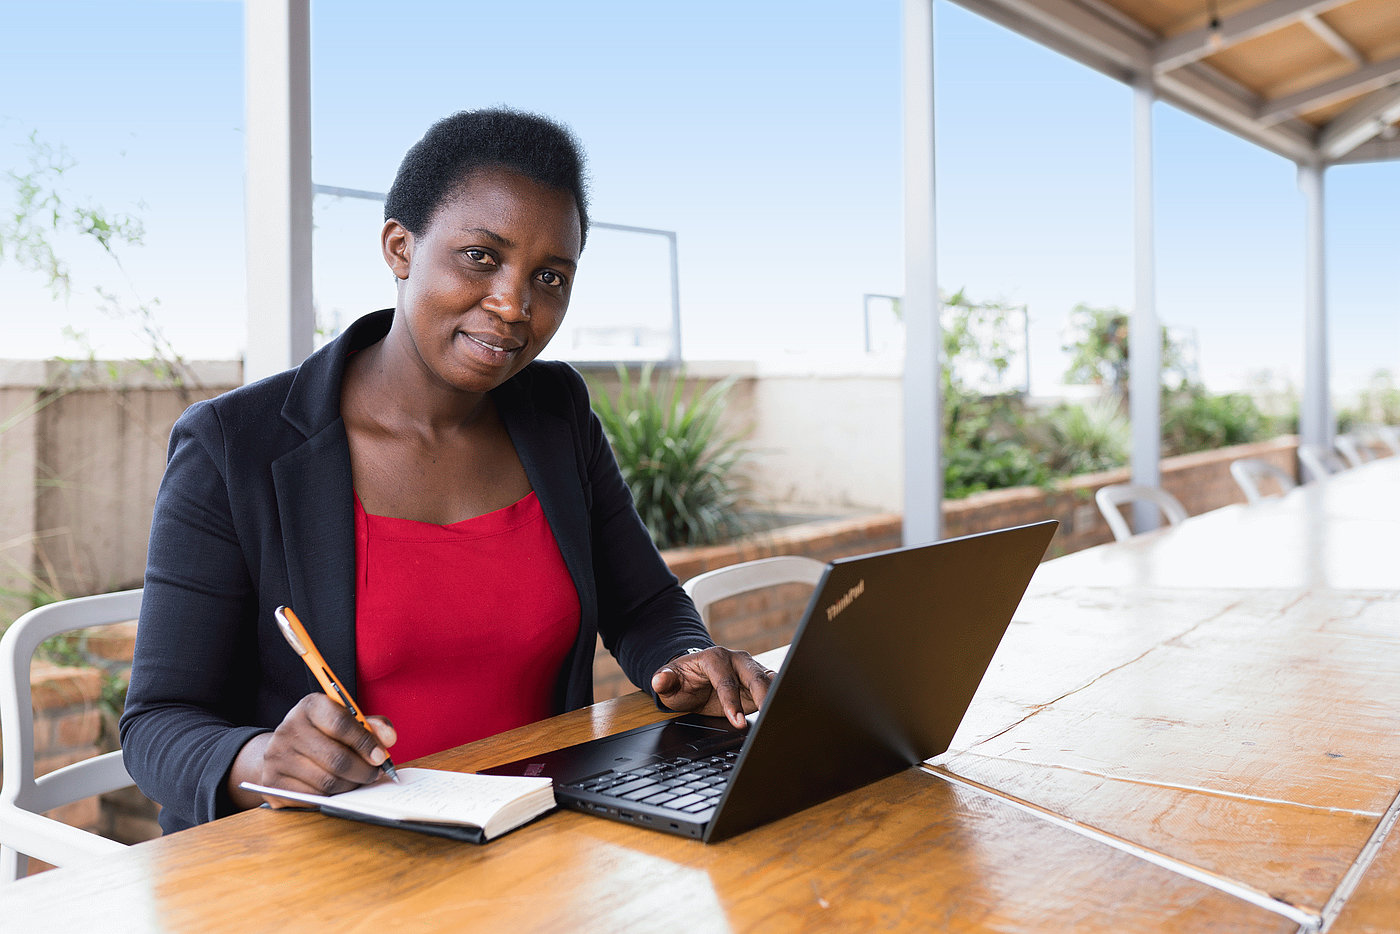 Foto: Eine Frau sitzt im Freien an einem Schreibtisch. Vor ihr steht ein geöffneter Laptop. Sie notiert etwas in ihrem Notizblock, welcher neben dem Laptop auf dem Tisch liegt.